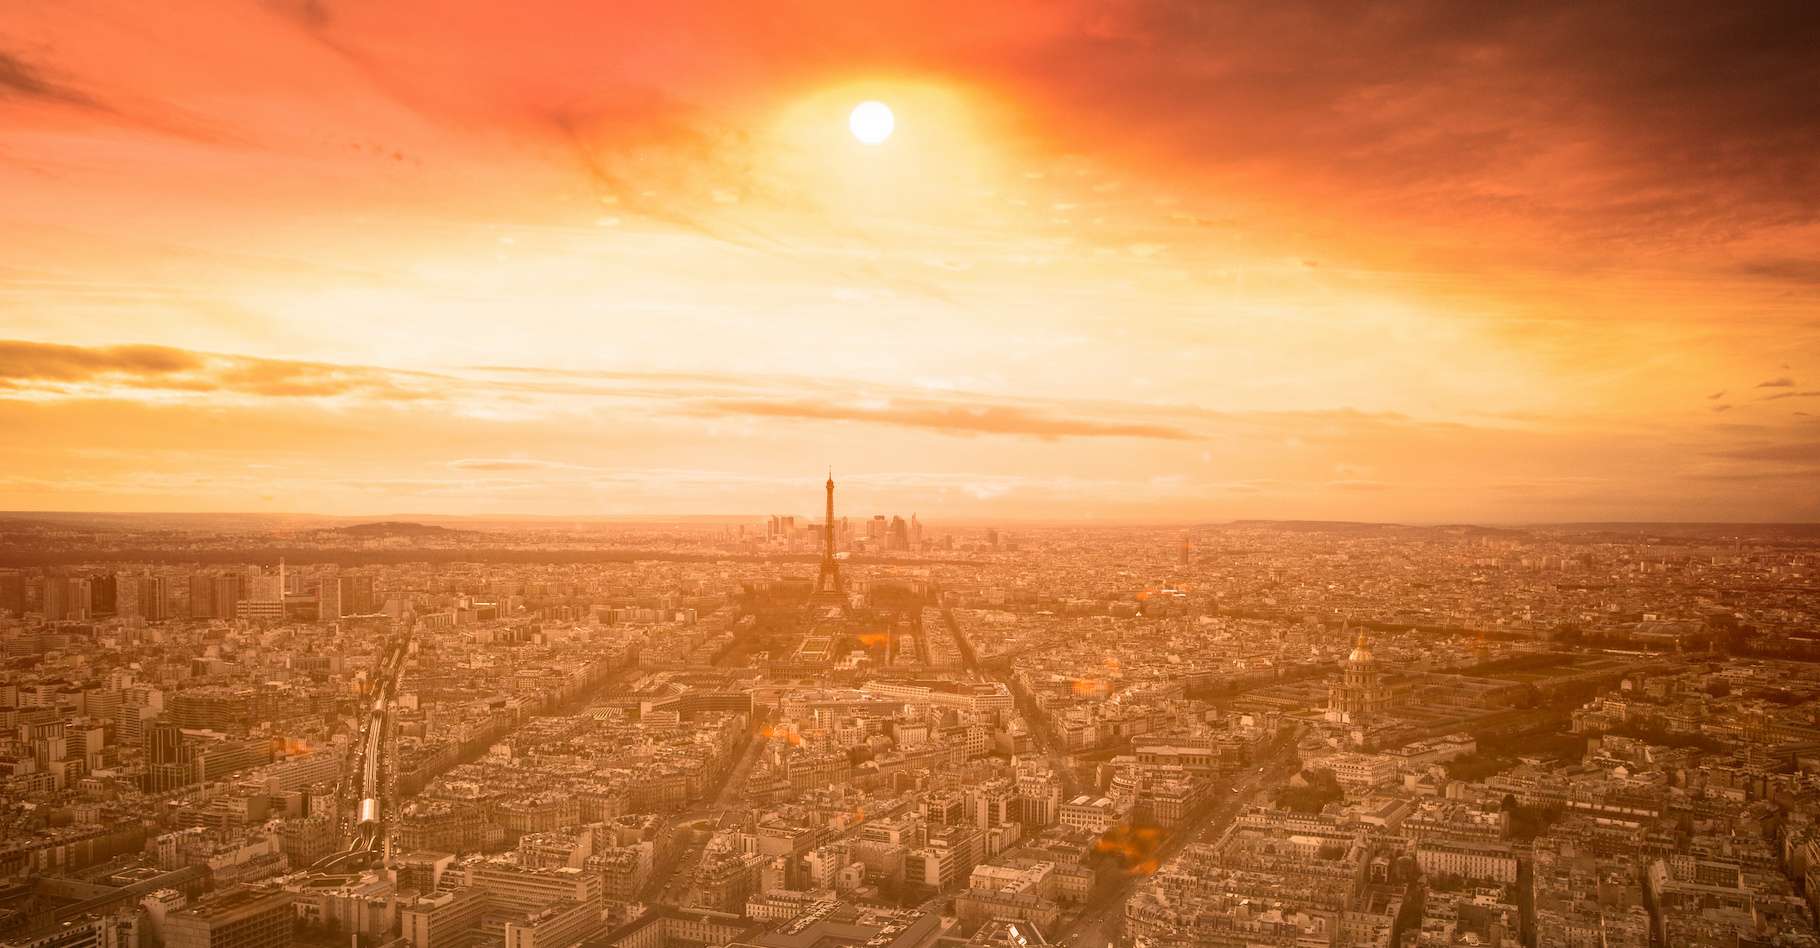 Les émissions de gaz à effet de serre ont baissé en France grâce à la crise énergétique et à la météo